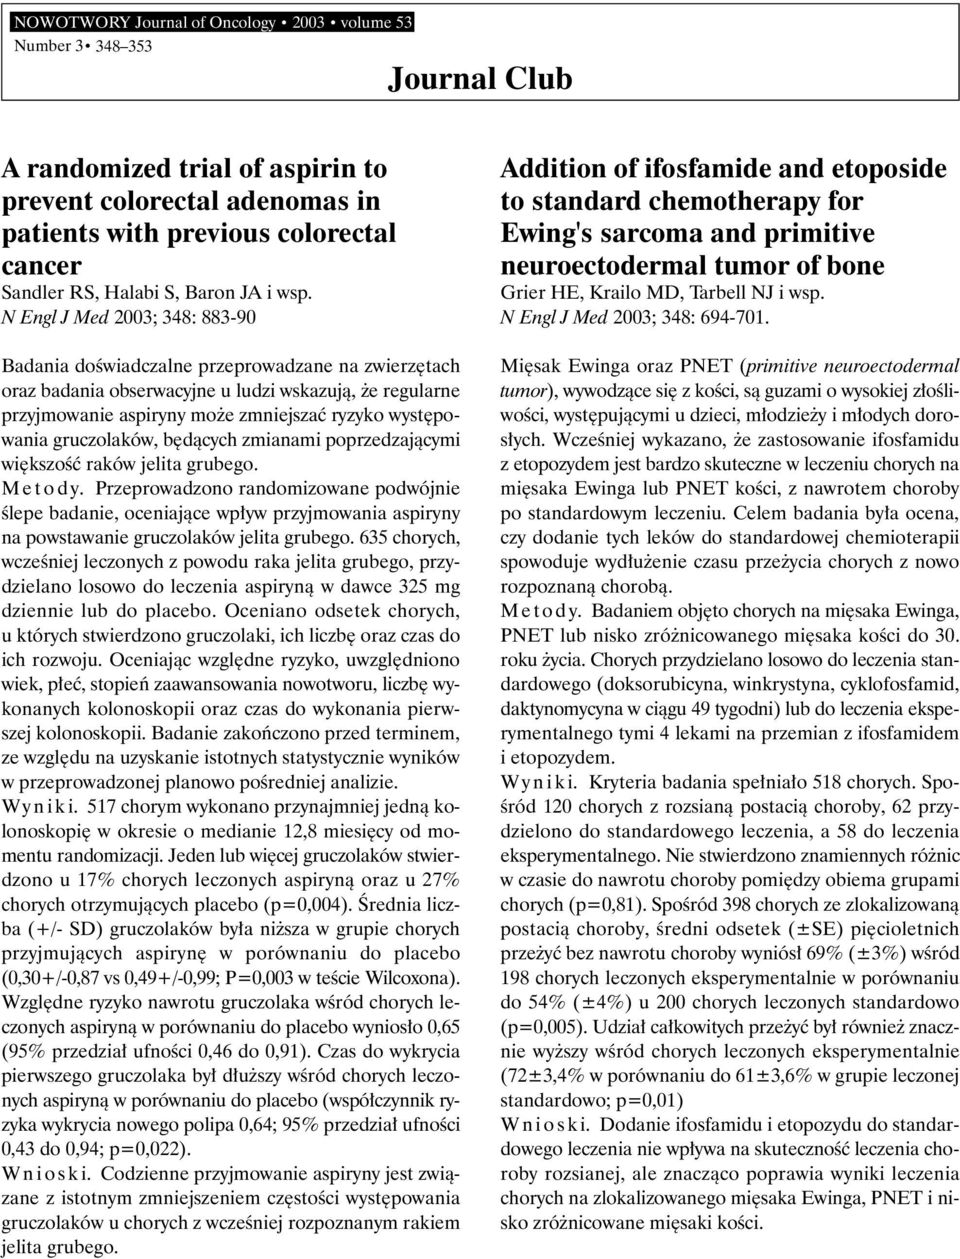 N Engl J Med 2003; 348: 883-90 Badania doêwiadczalne przeprowadzane na zwierz tach oraz badania obserwacyjne u ludzi wskazujà, e regularne przyjmowanie aspiryny mo e zmniejszaç ryzyko wyst powania